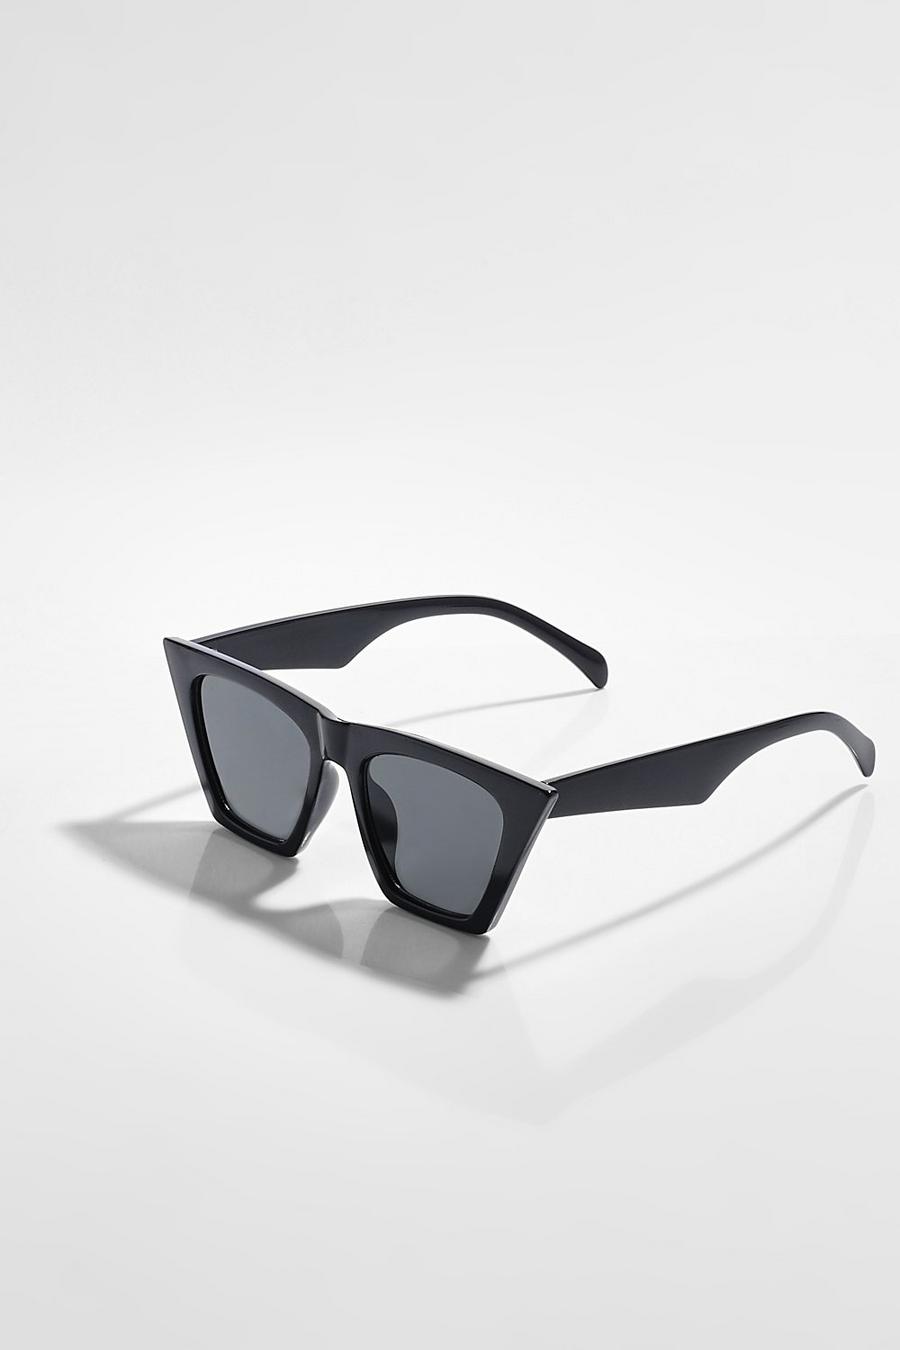 Gafas de sol inclinadas estilo ojo de gato, Black negro image number 1